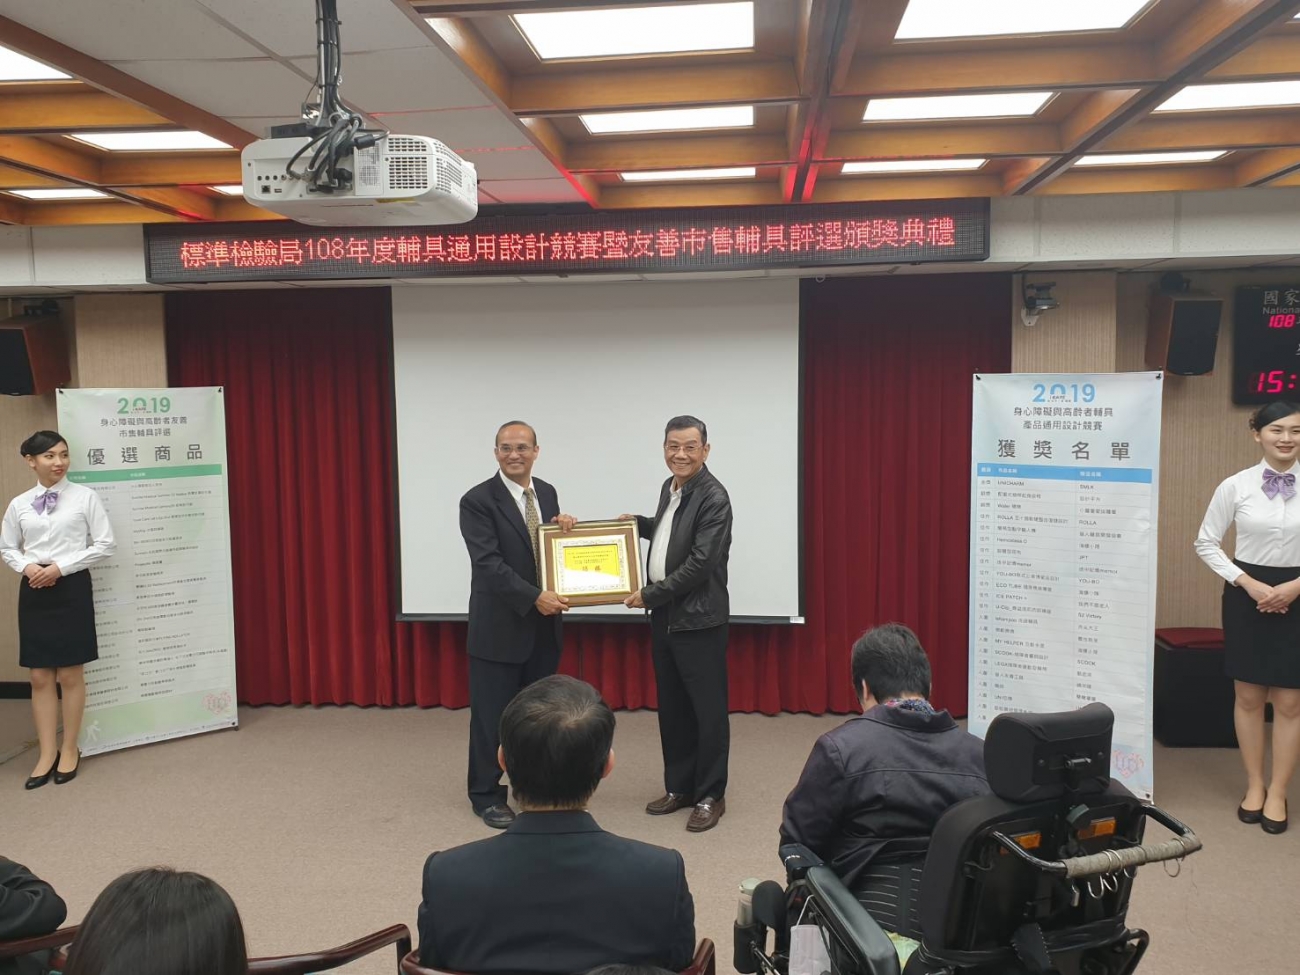 樂安康longcare自動翻身氣墊床得到經濟部的肯定並得獎及頒獎，且易受到北京的肯定